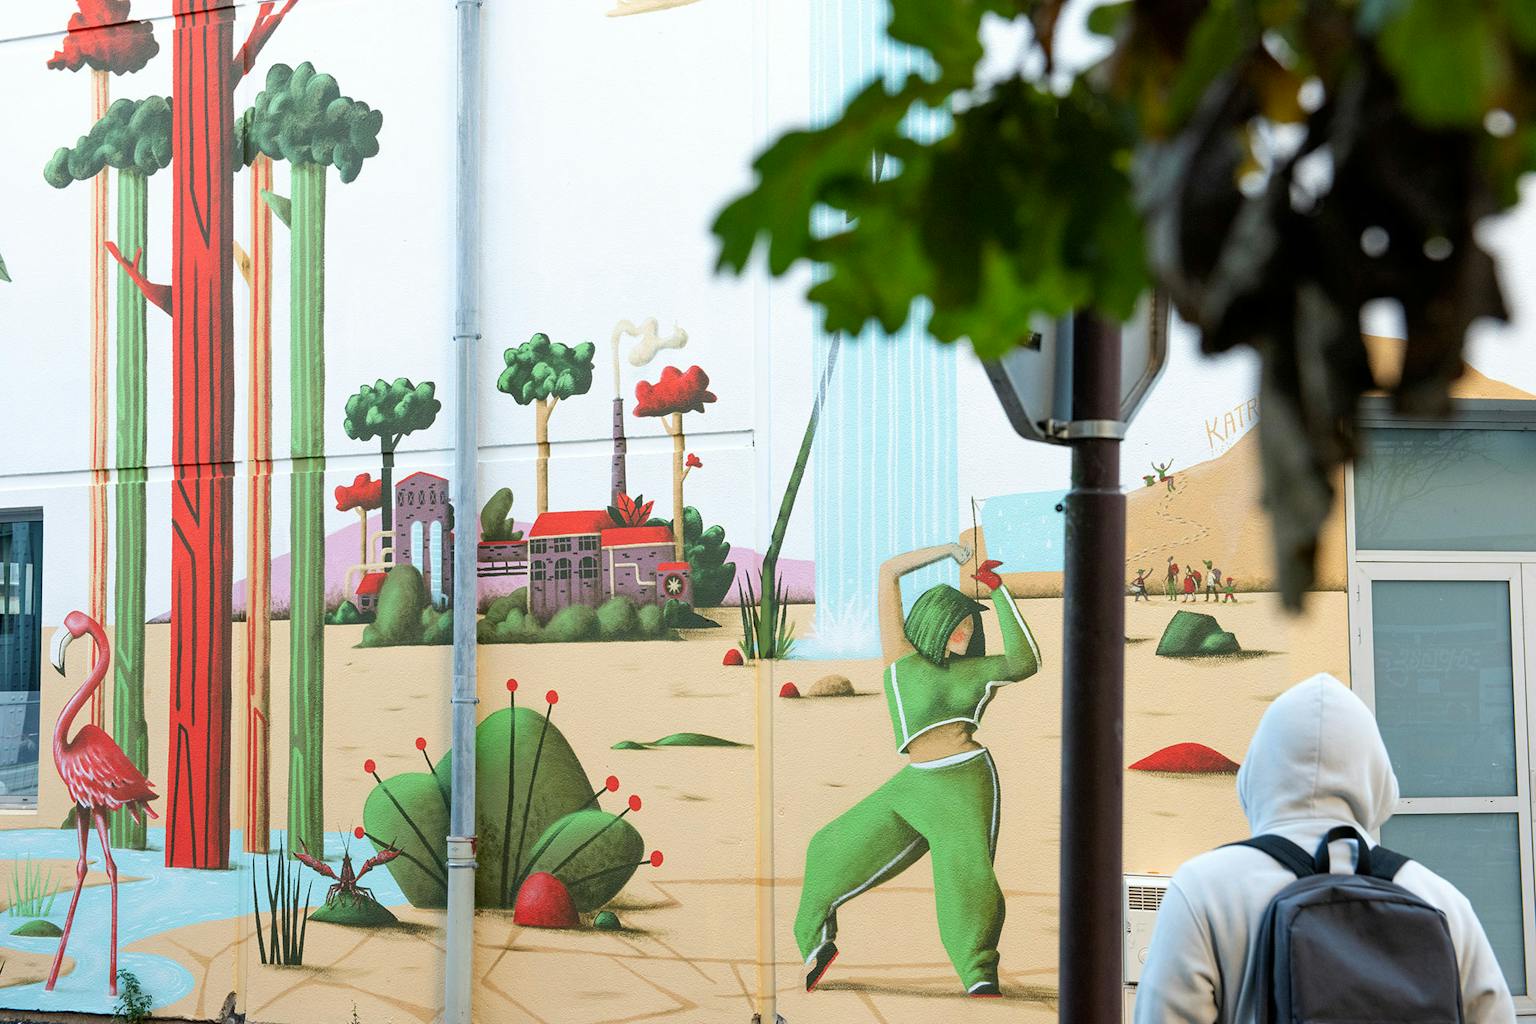 Identité visuelle fresque murale extérieure personnages coworking Open Lande.